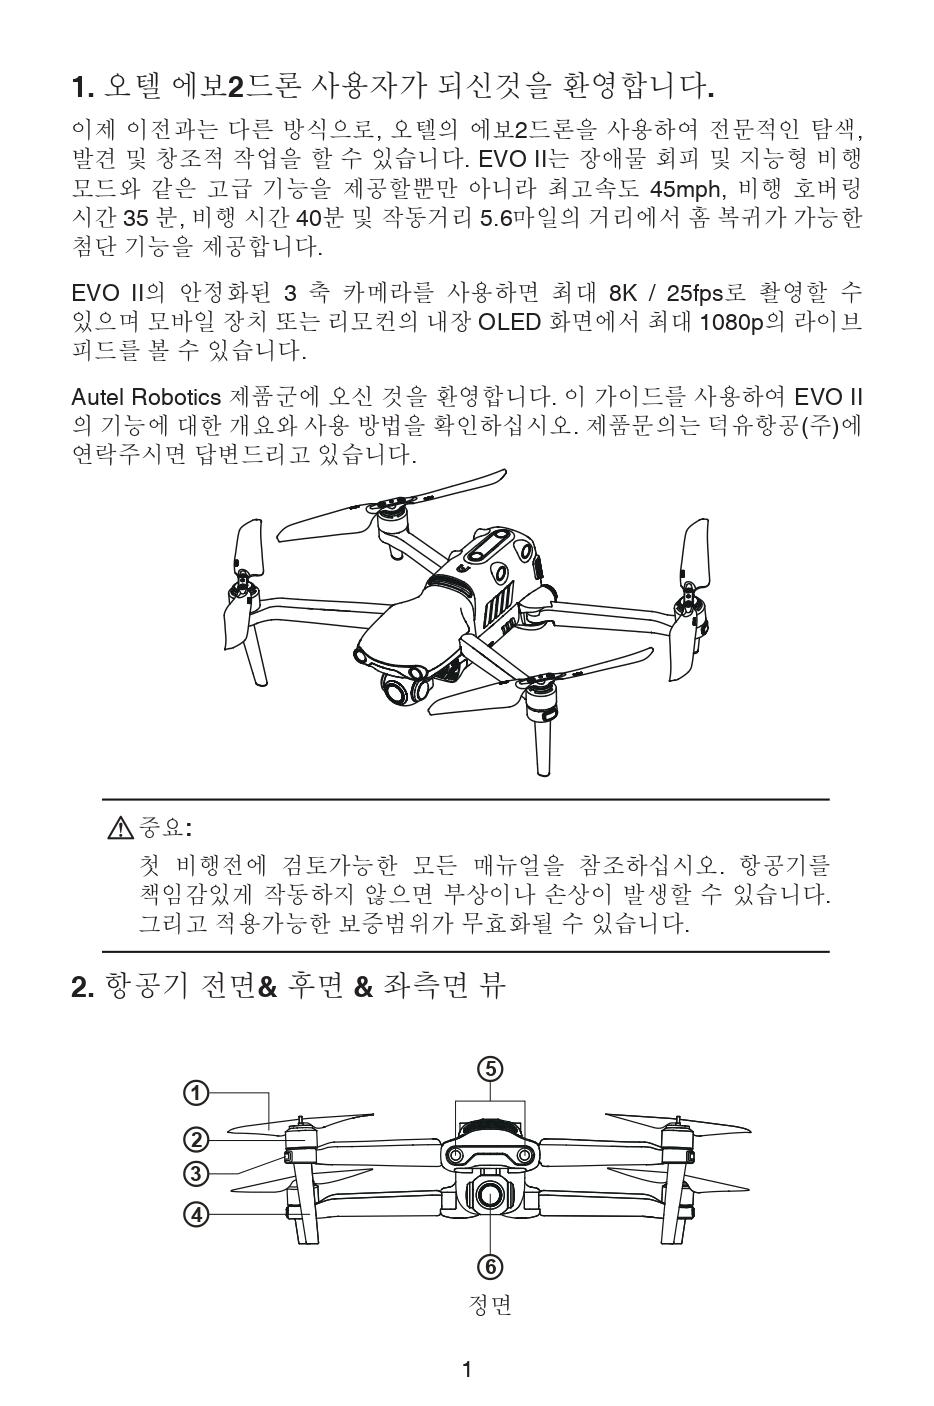 오텔 에보2 드론 사용자 퀵 가이드;Autel Robotics EVO2 Drone User Quick Guide;덕유항공은 DJI드론을 취급하지 않는 오텔드론 총판입니다.